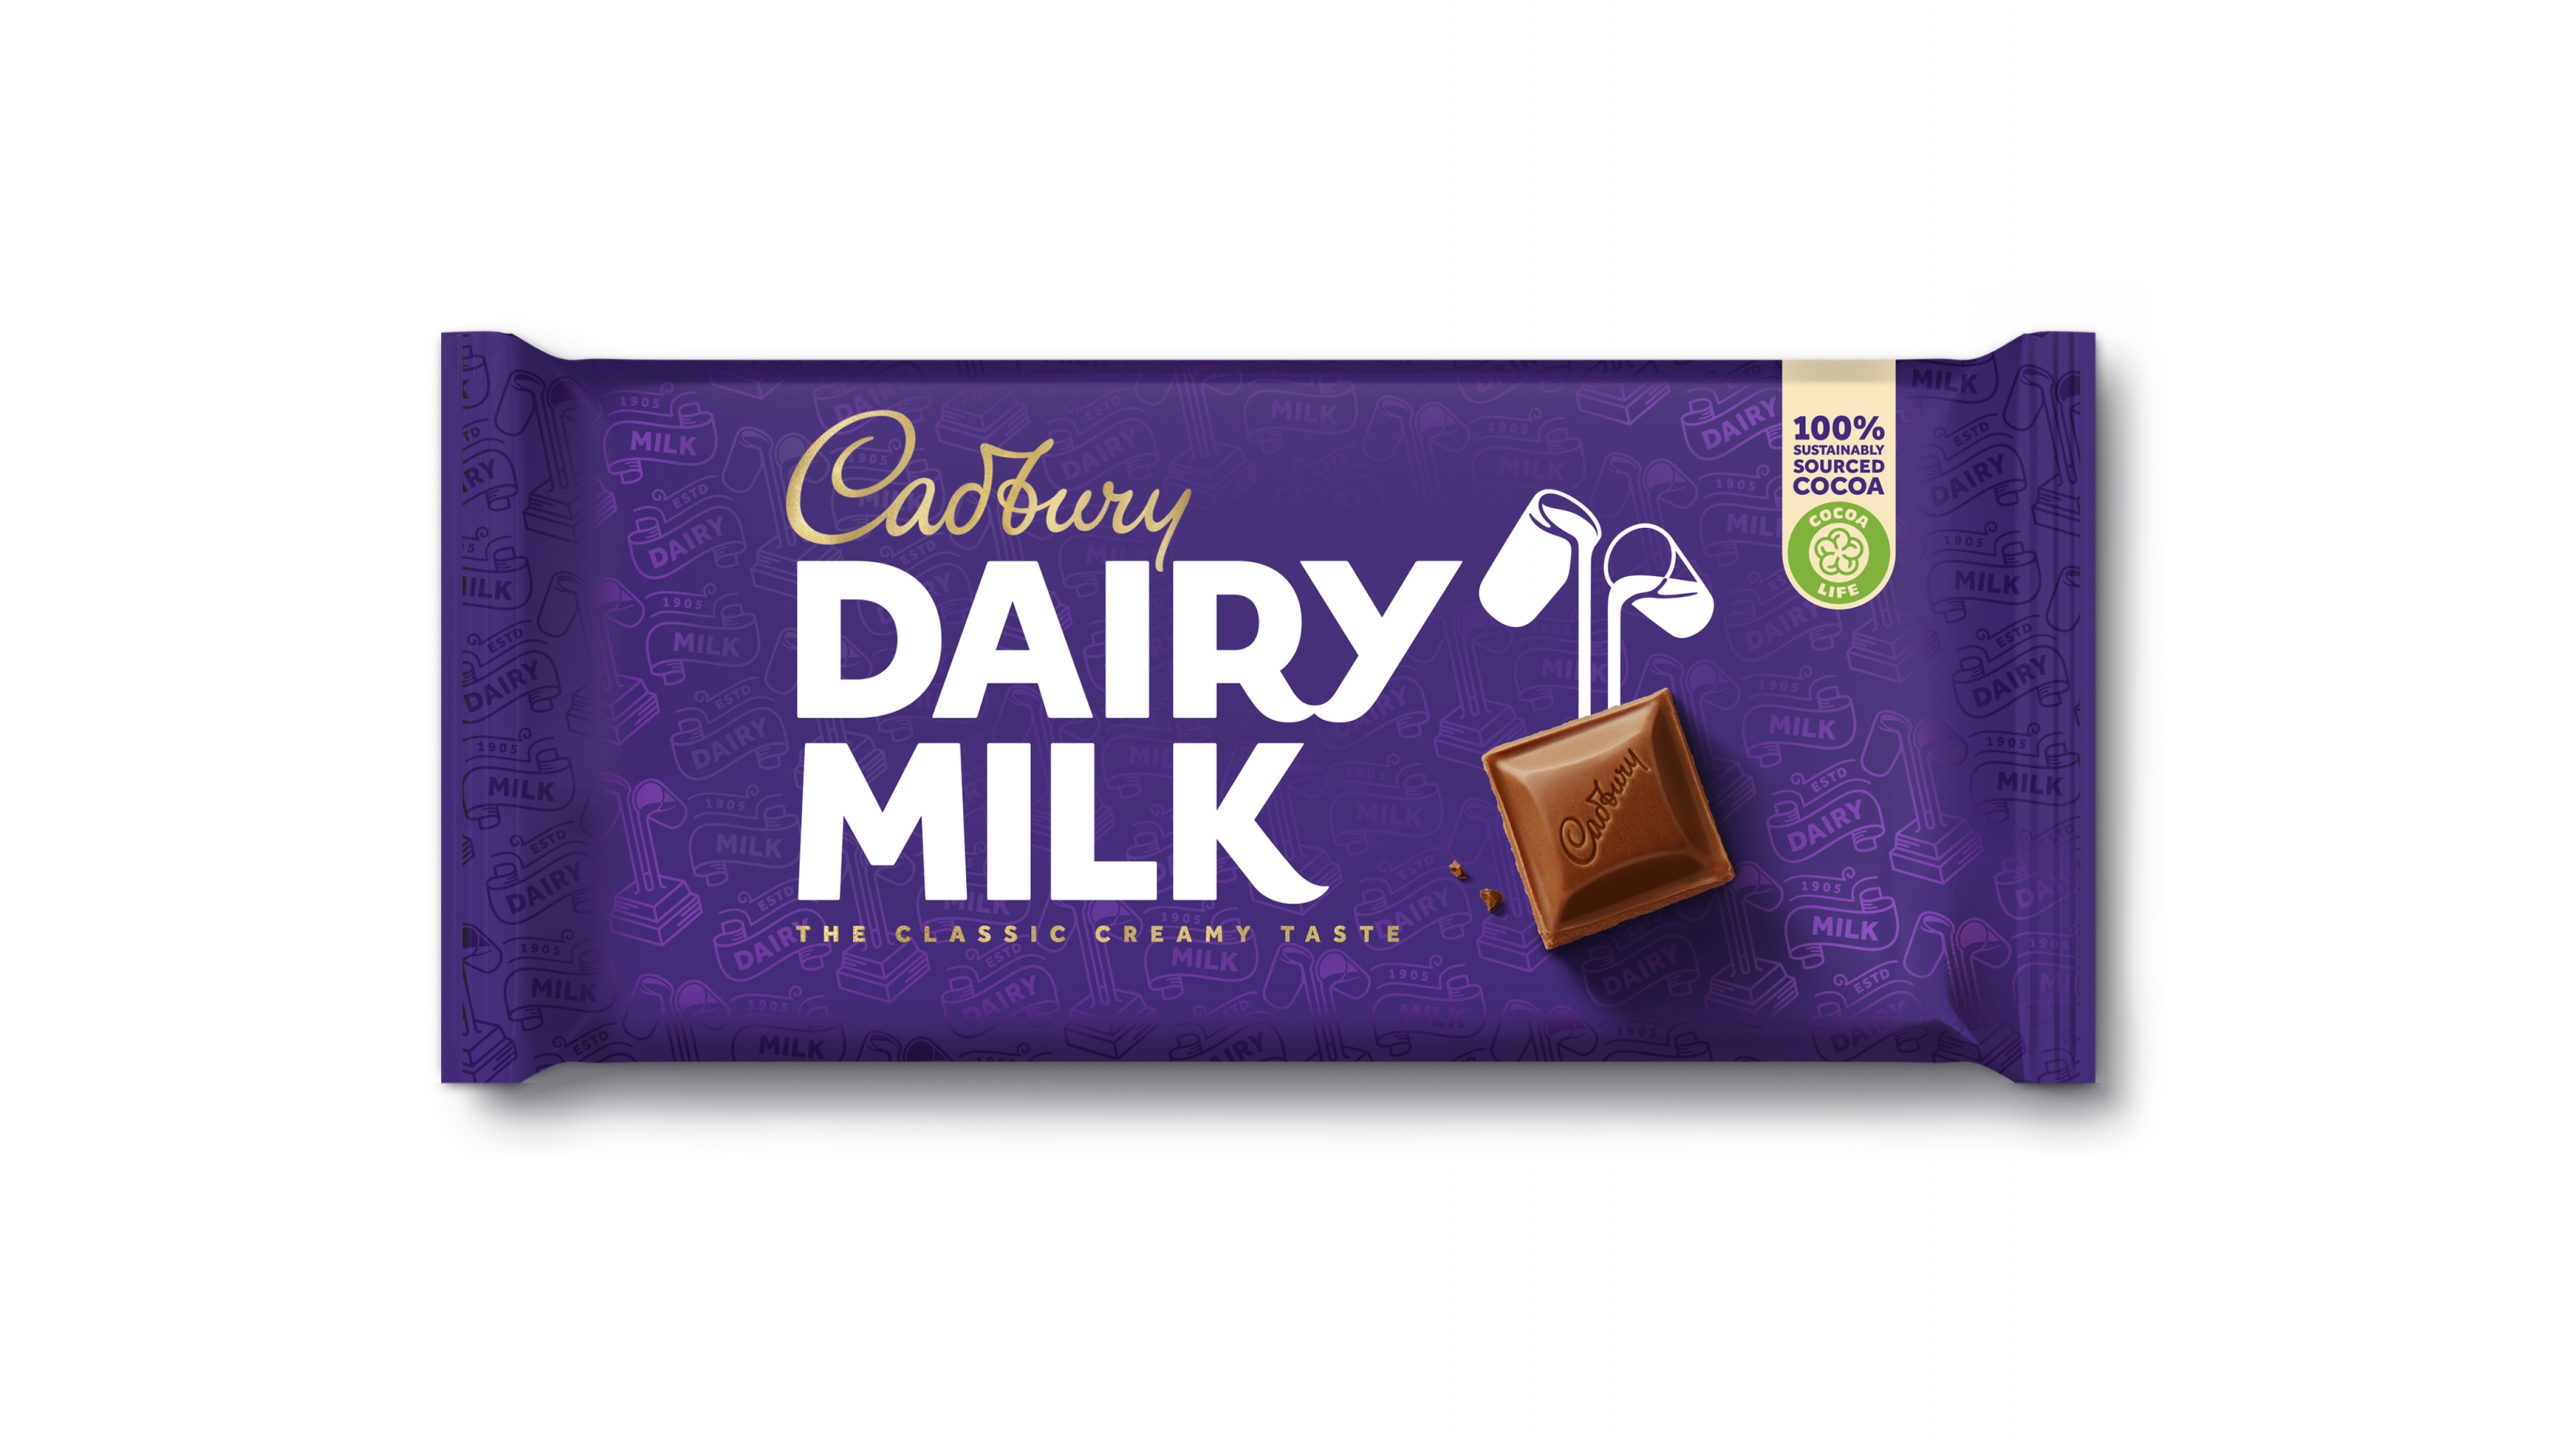 Cadbury Match & Win returns to stores